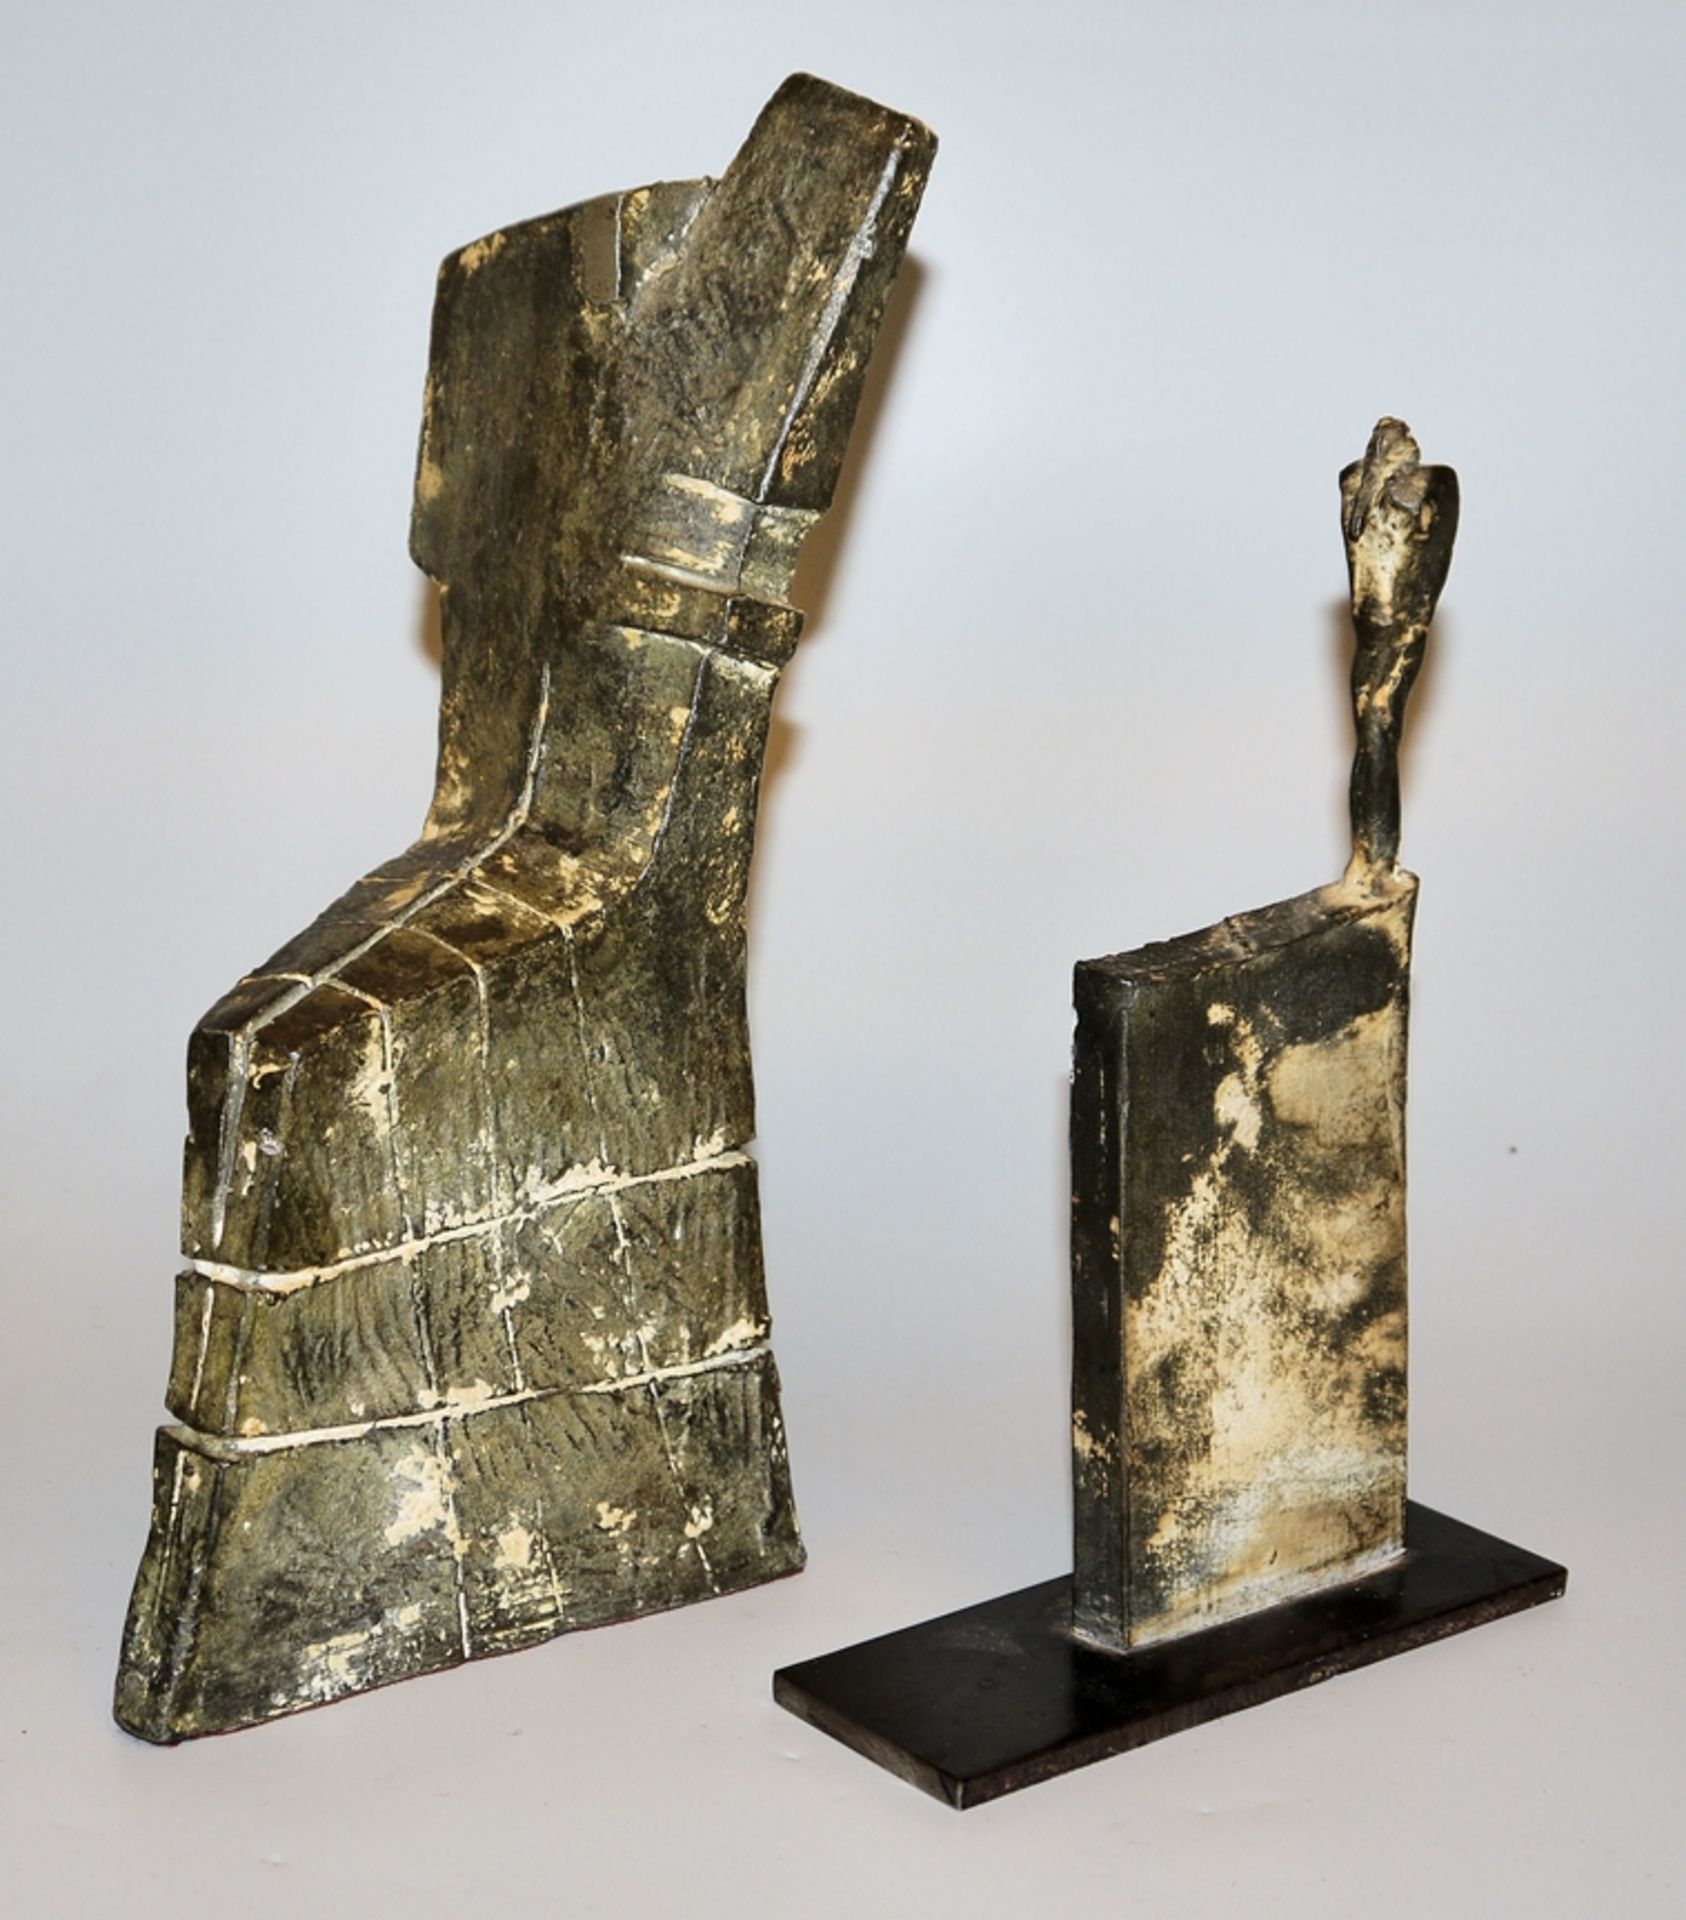 Martin Schöneich, 2 geometrically reduced figures, bronze sculptures - Image 2 of 5